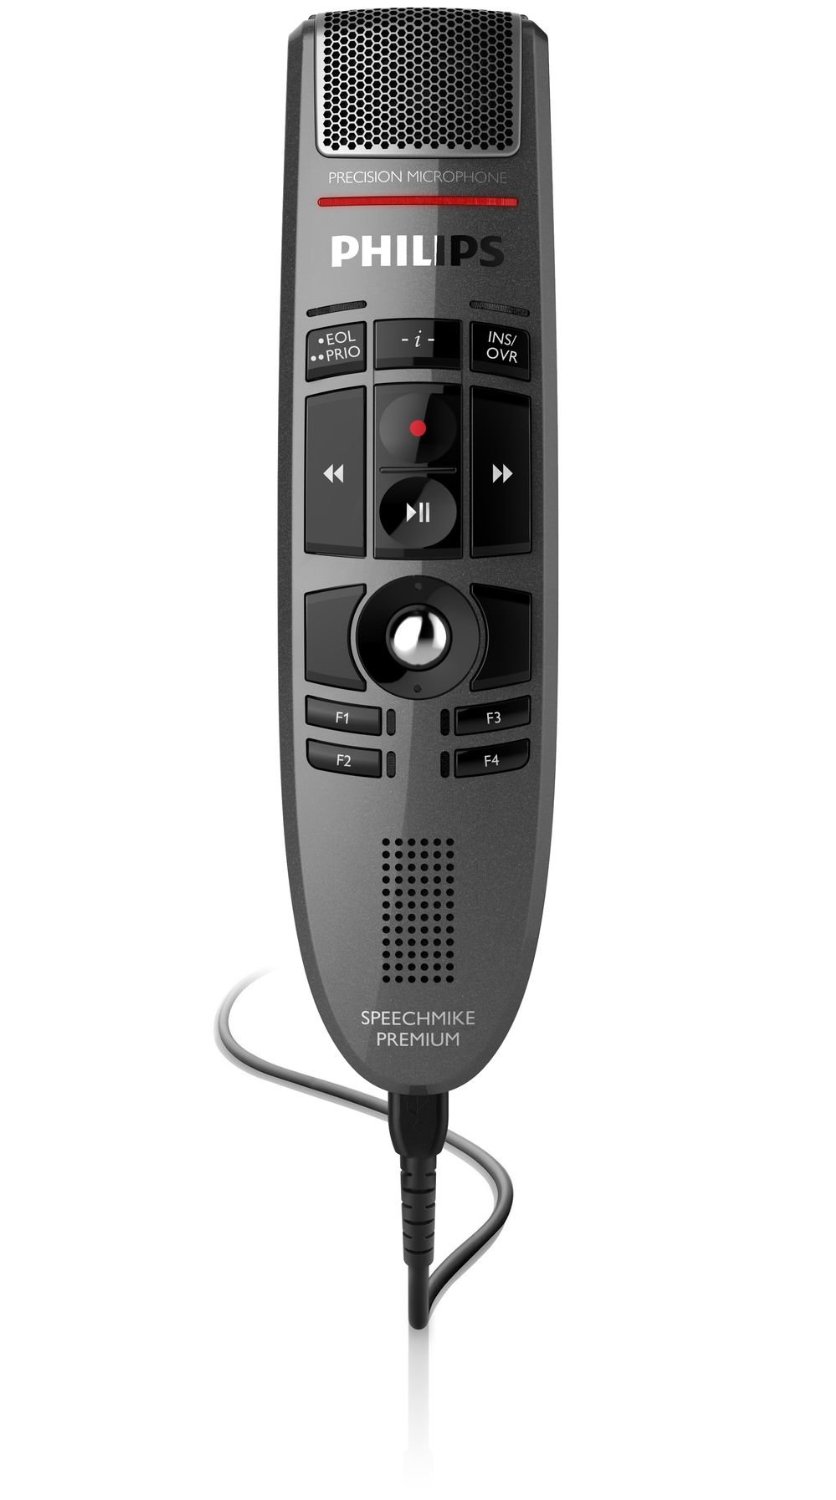 Control philips. Микрофон Филипс. Philips smp3700 SPEECHMIKE Premium Touch Precision USB Microphone - Push button Operation. Микрофон для диктофона.